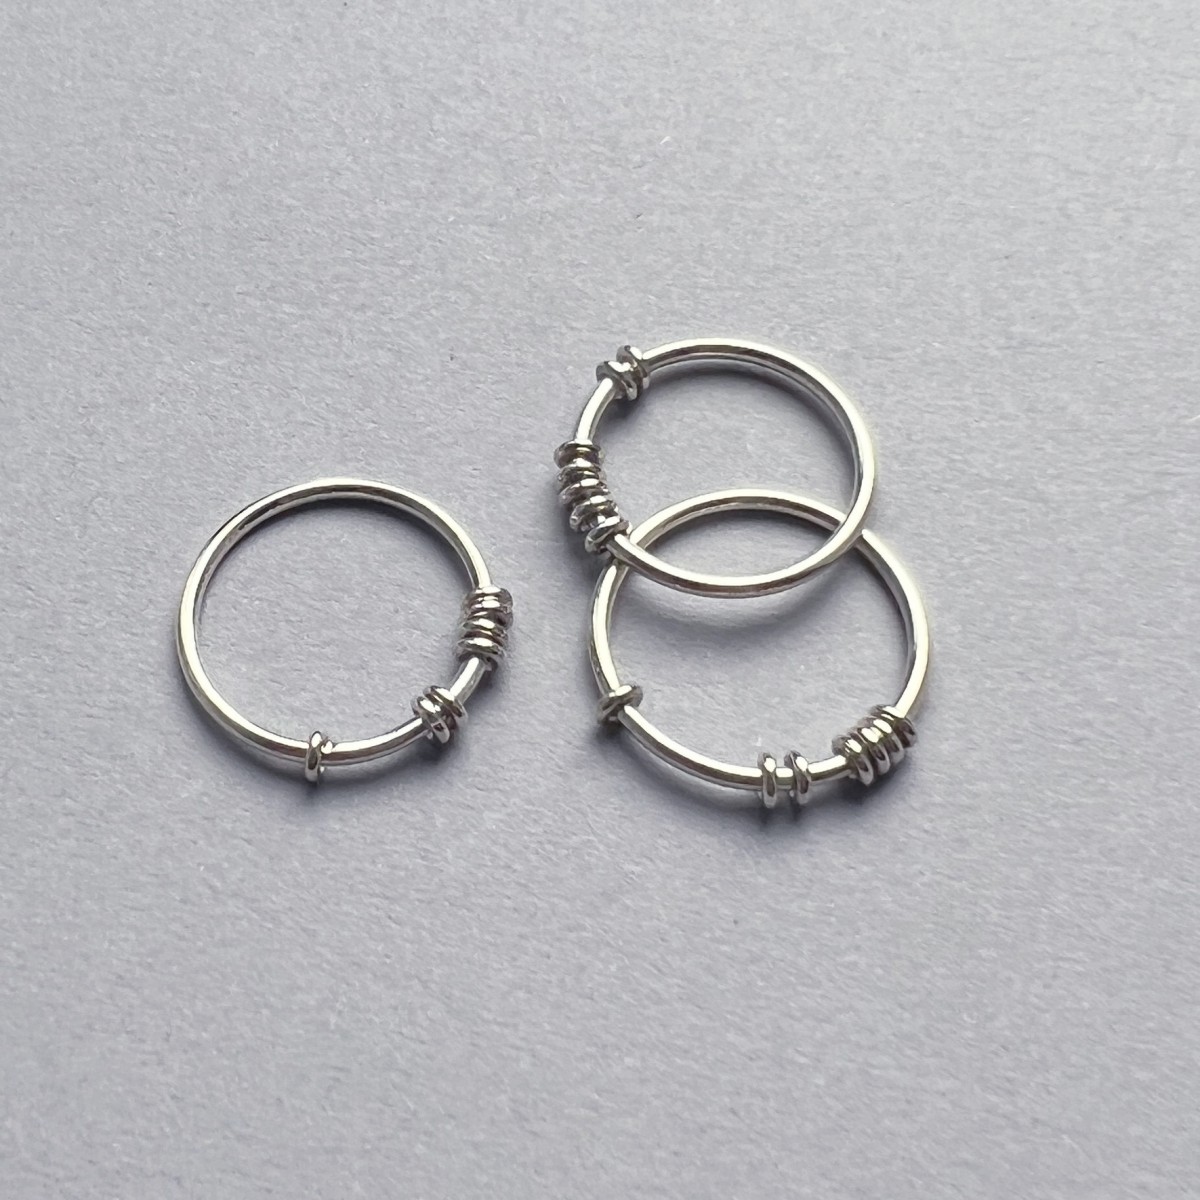 Teresa Gruber
Ring "Fidget"
925 Silber